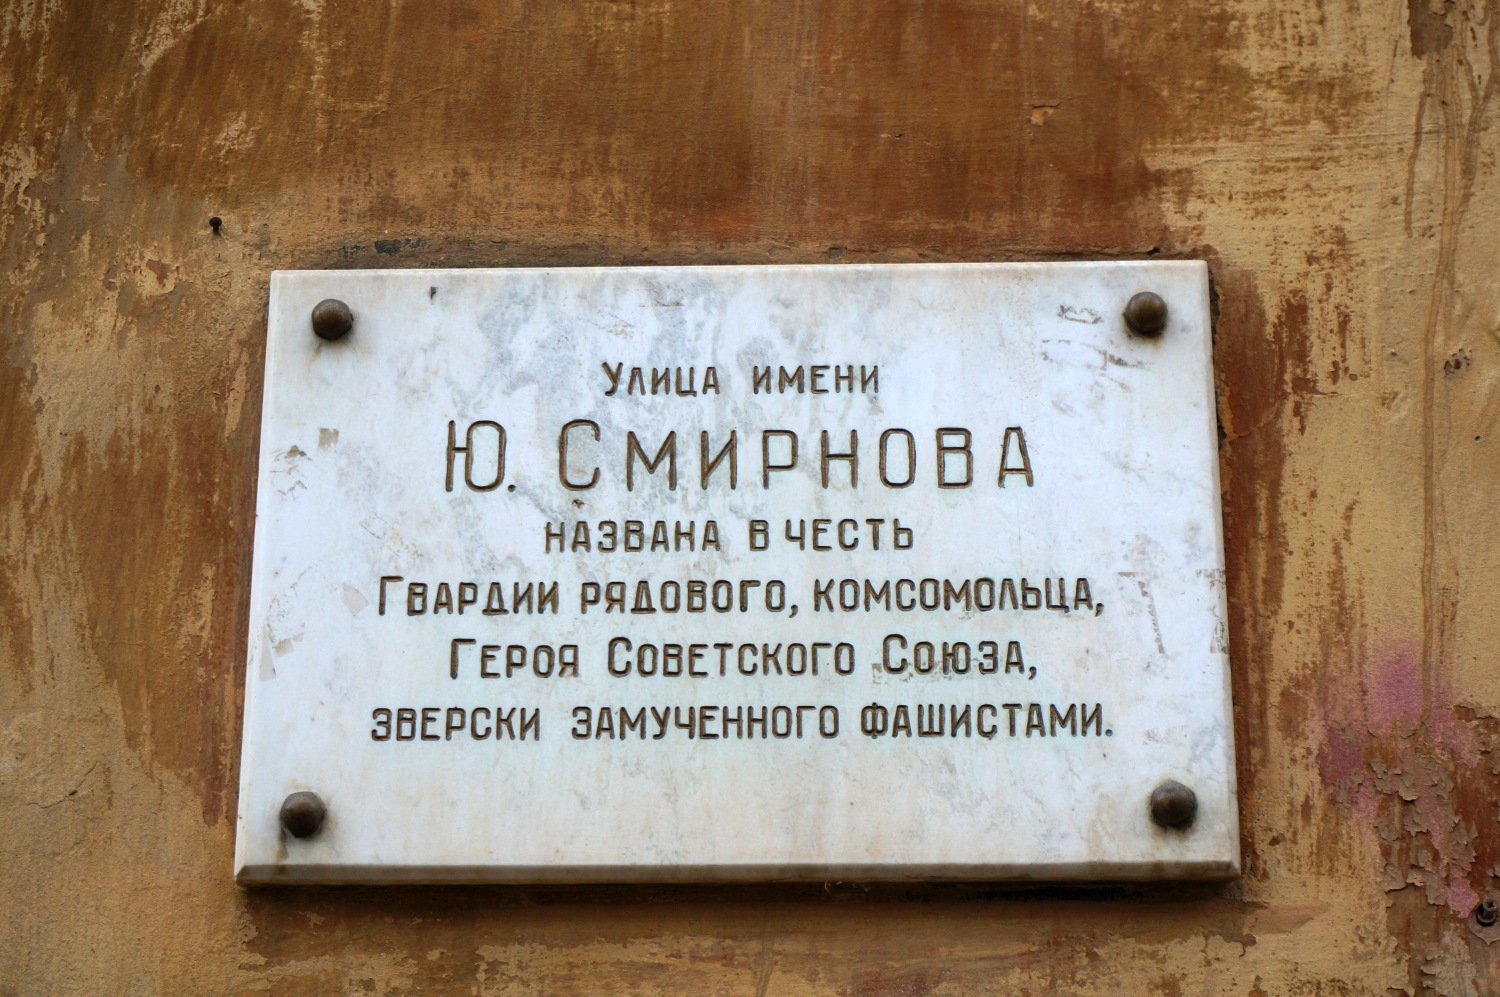 Perm, Улица Юрия Смирнова, 8 / Комсомольский проспект, 73. Perm — Memorial plaques